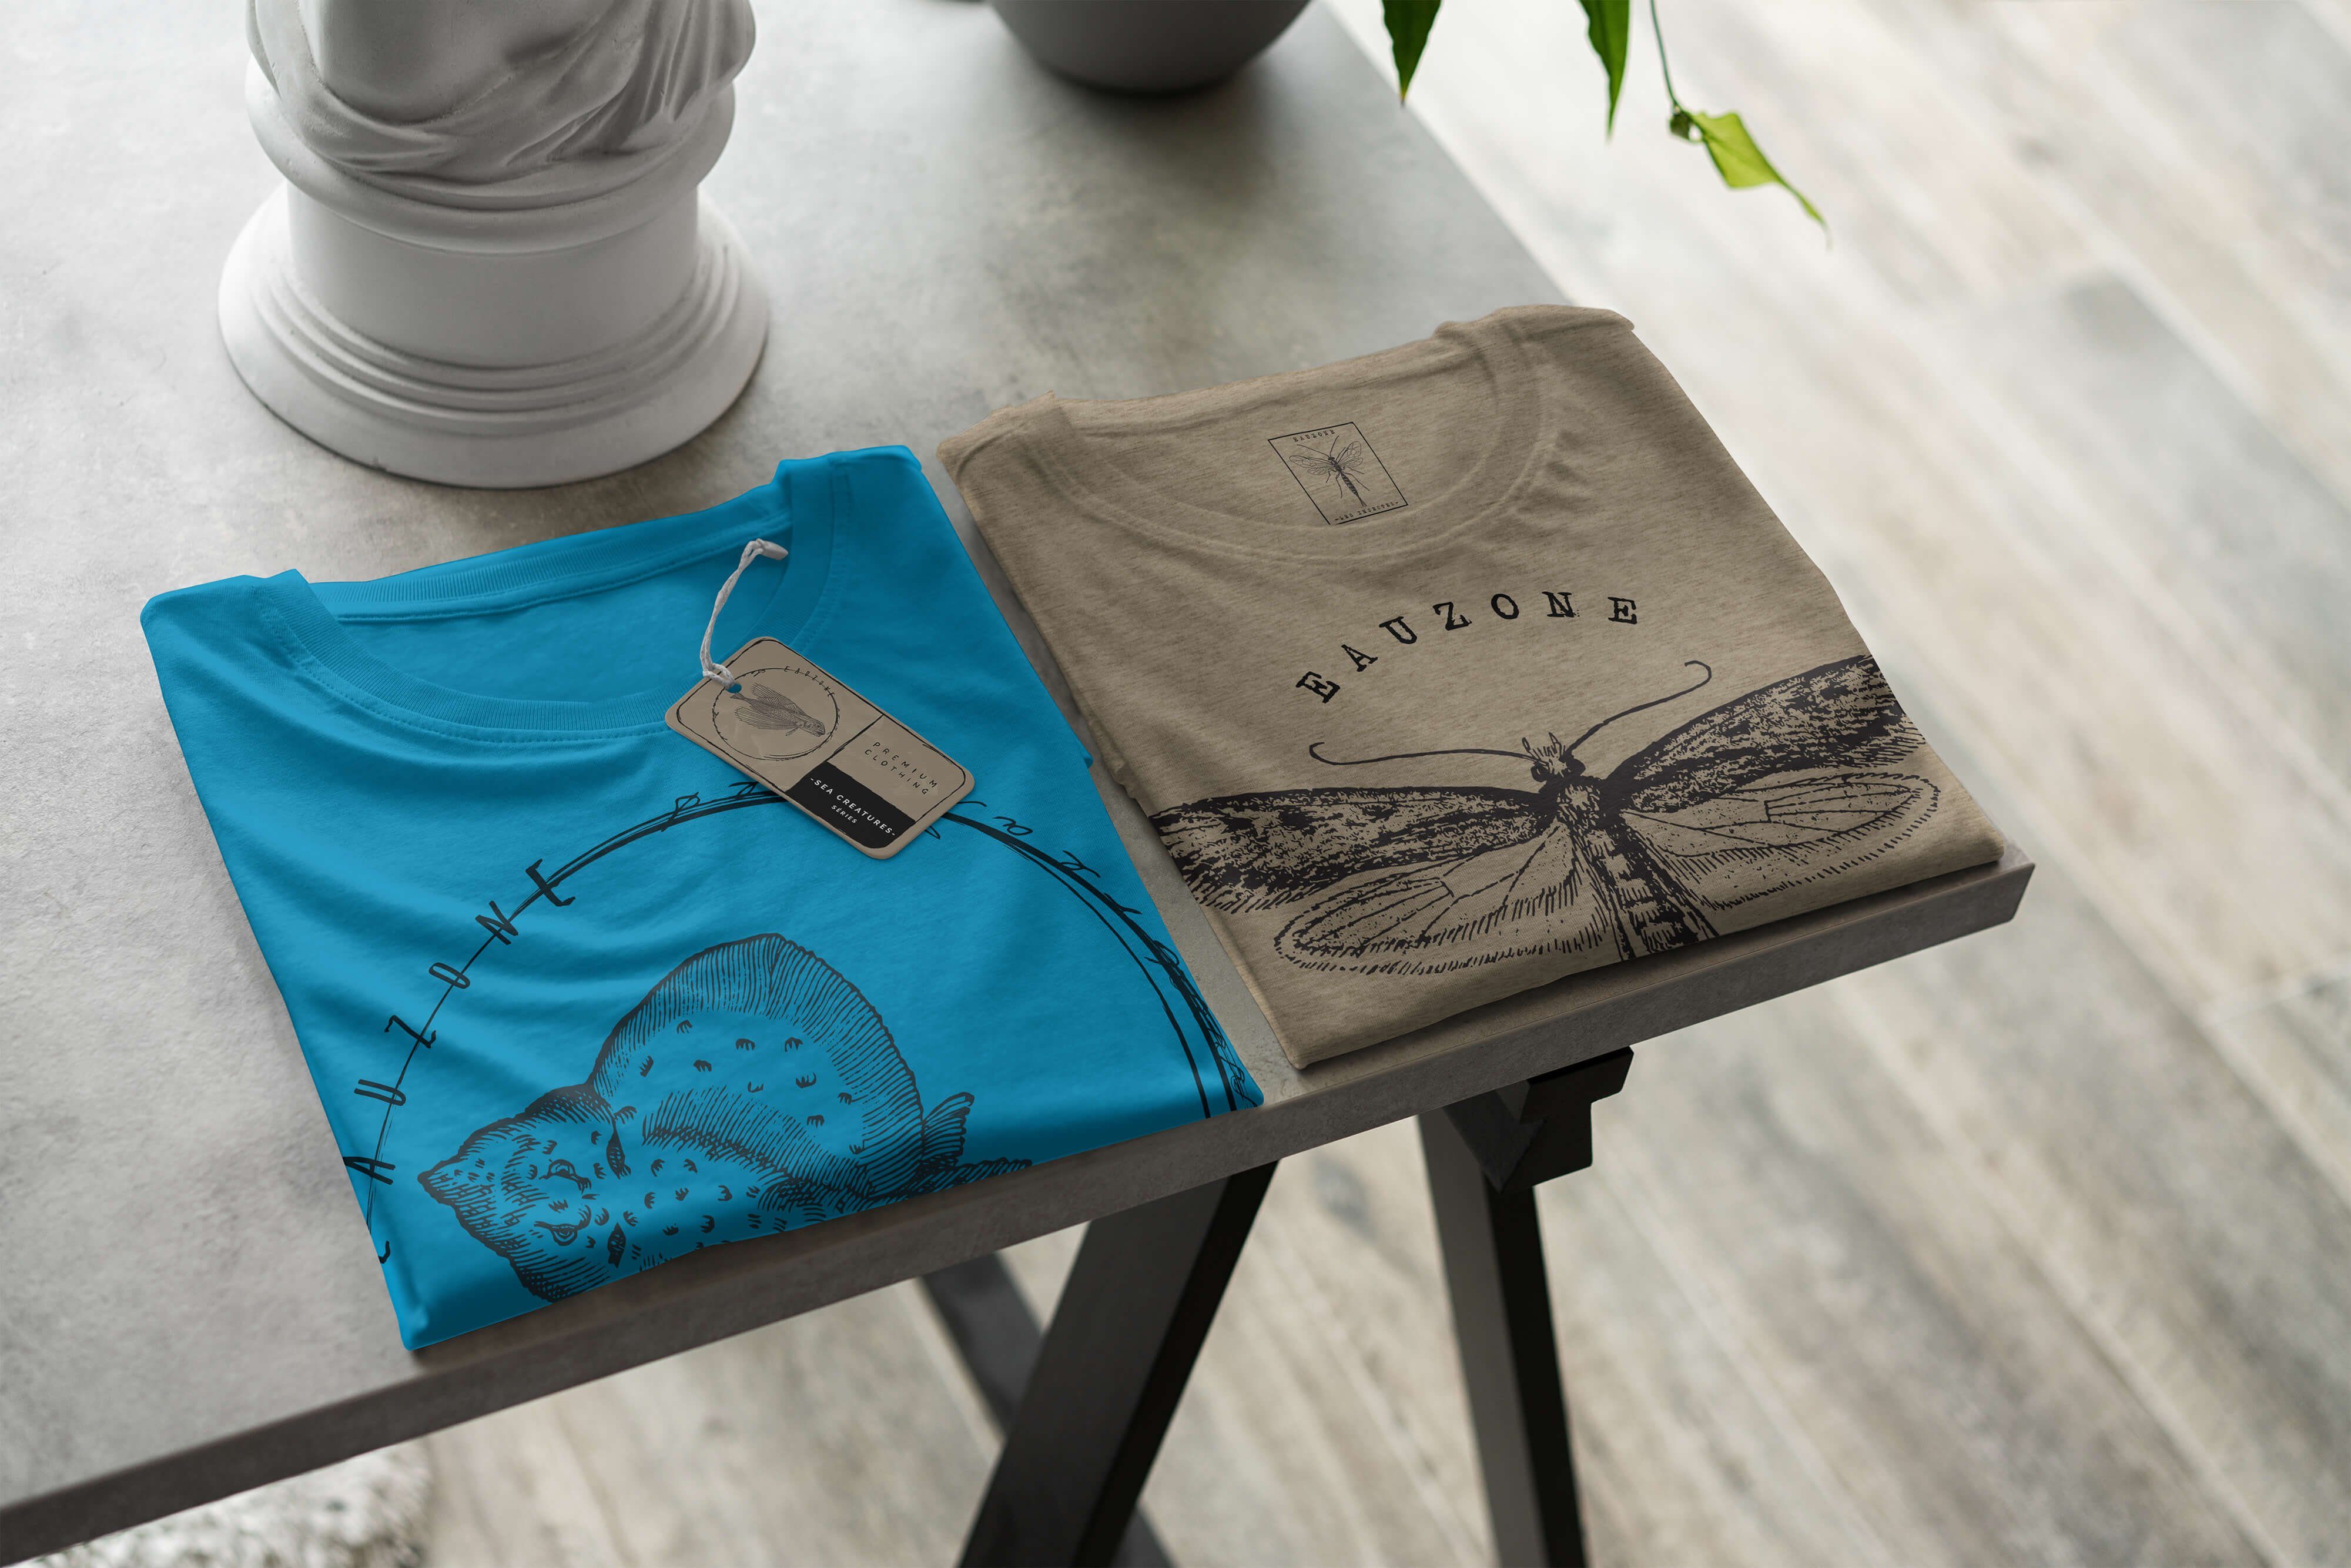 Sinus Fische Serie: Tiefsee Sea Art T-Shirt 096 Sea Creatures, feine und / Atoll Struktur sportlicher - T-Shirt Schnitt